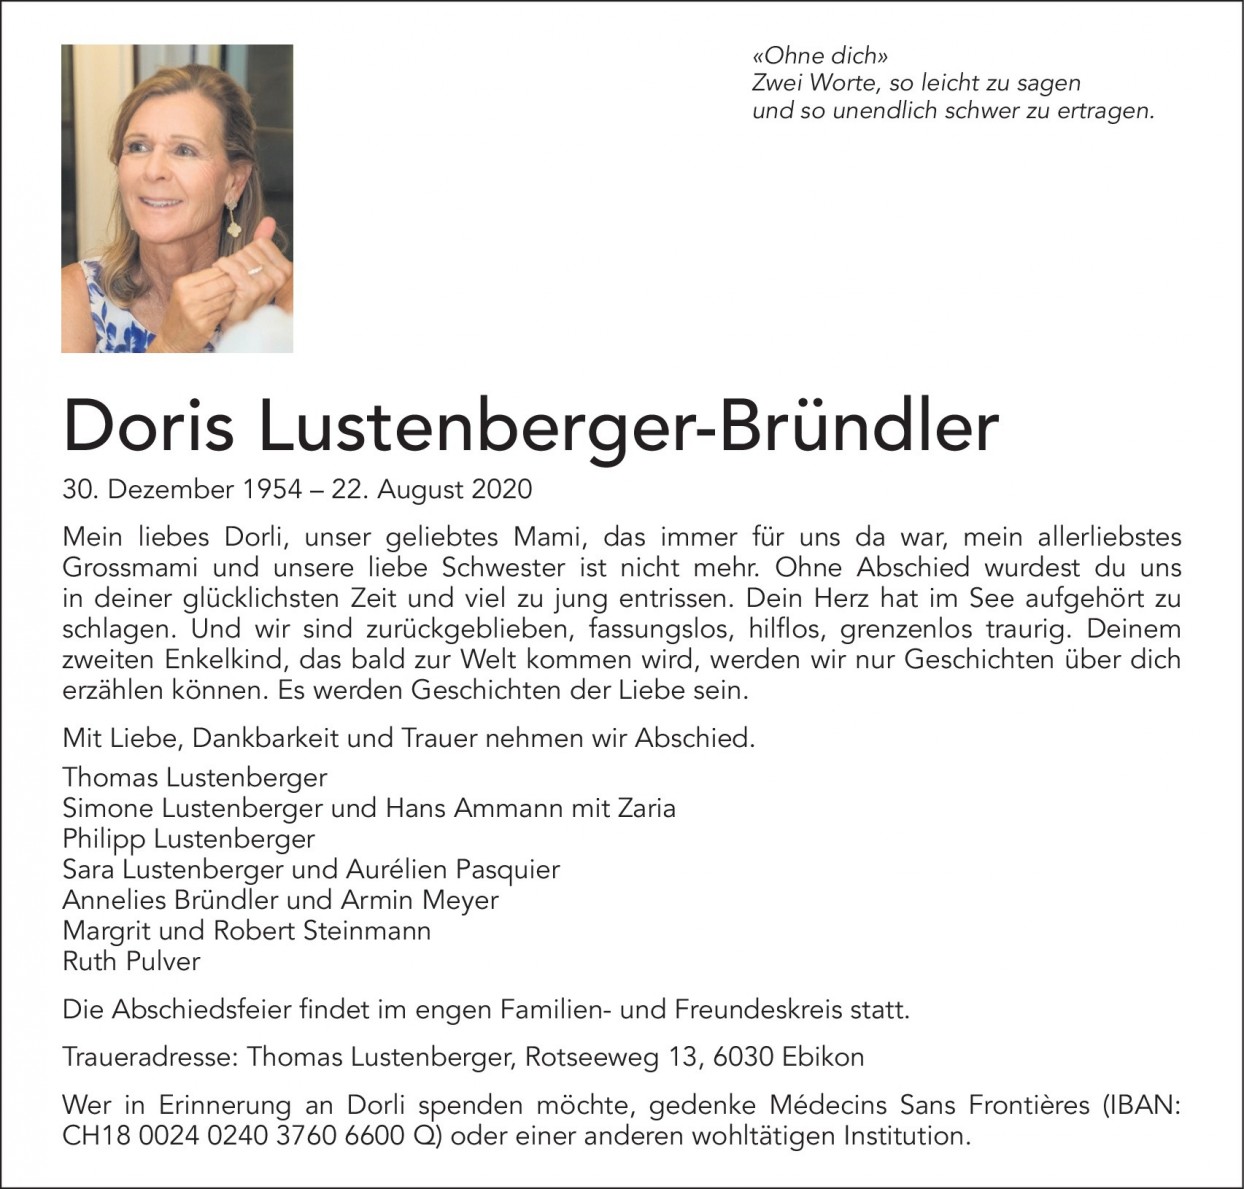 Doris Lustenberger-Bründler